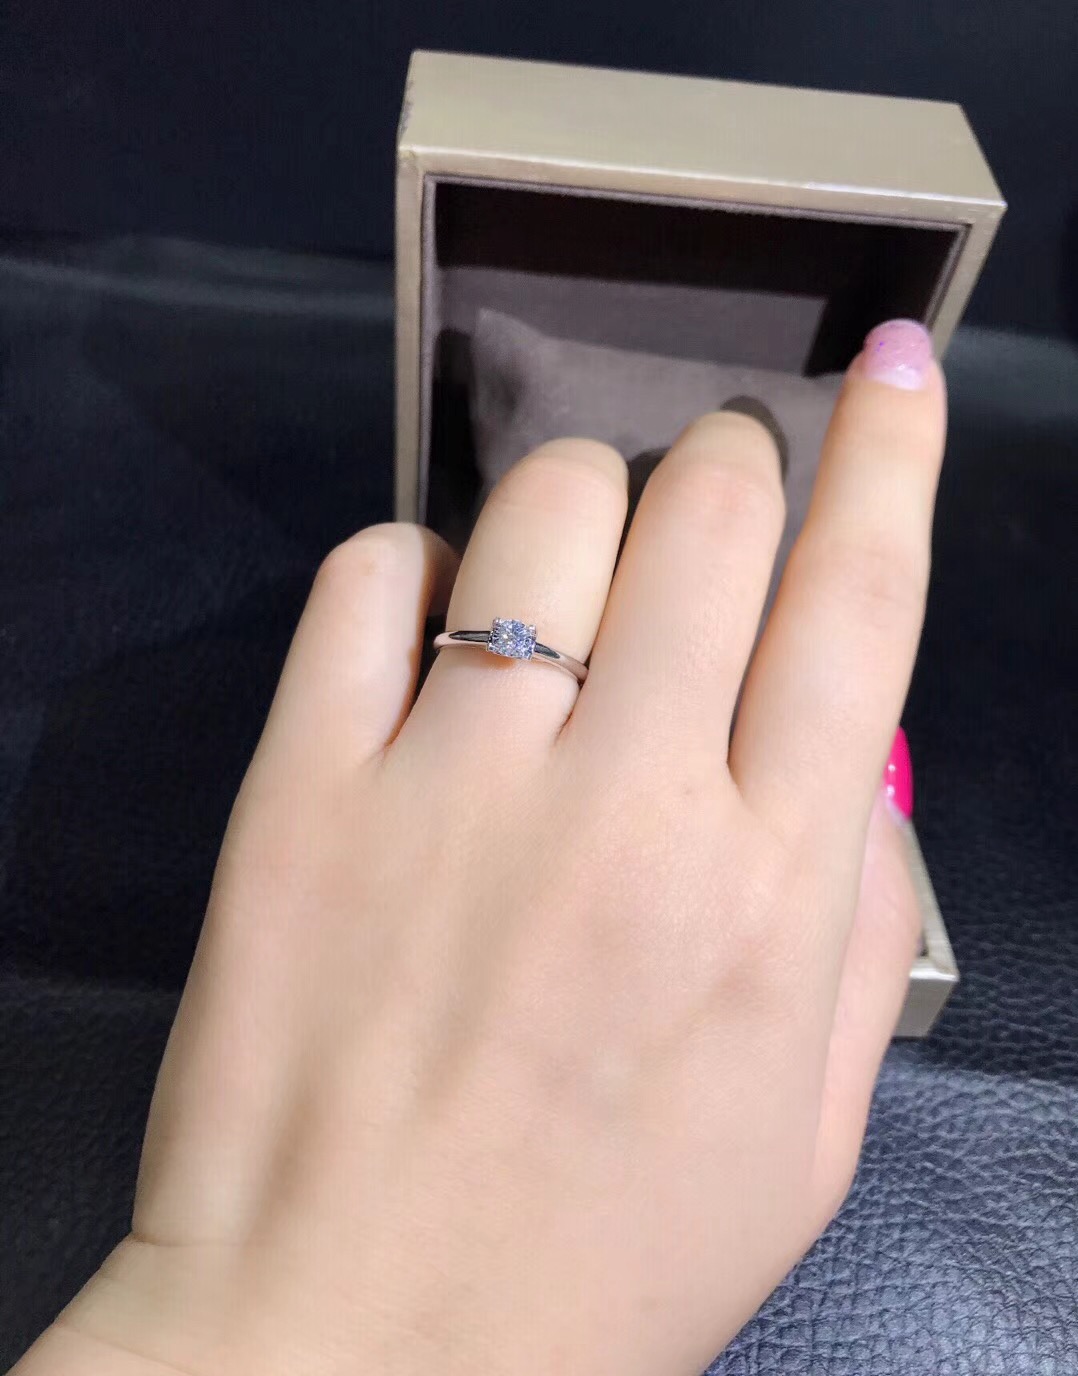 KS3500D Engagement Diamond Ring in 18k White Gold